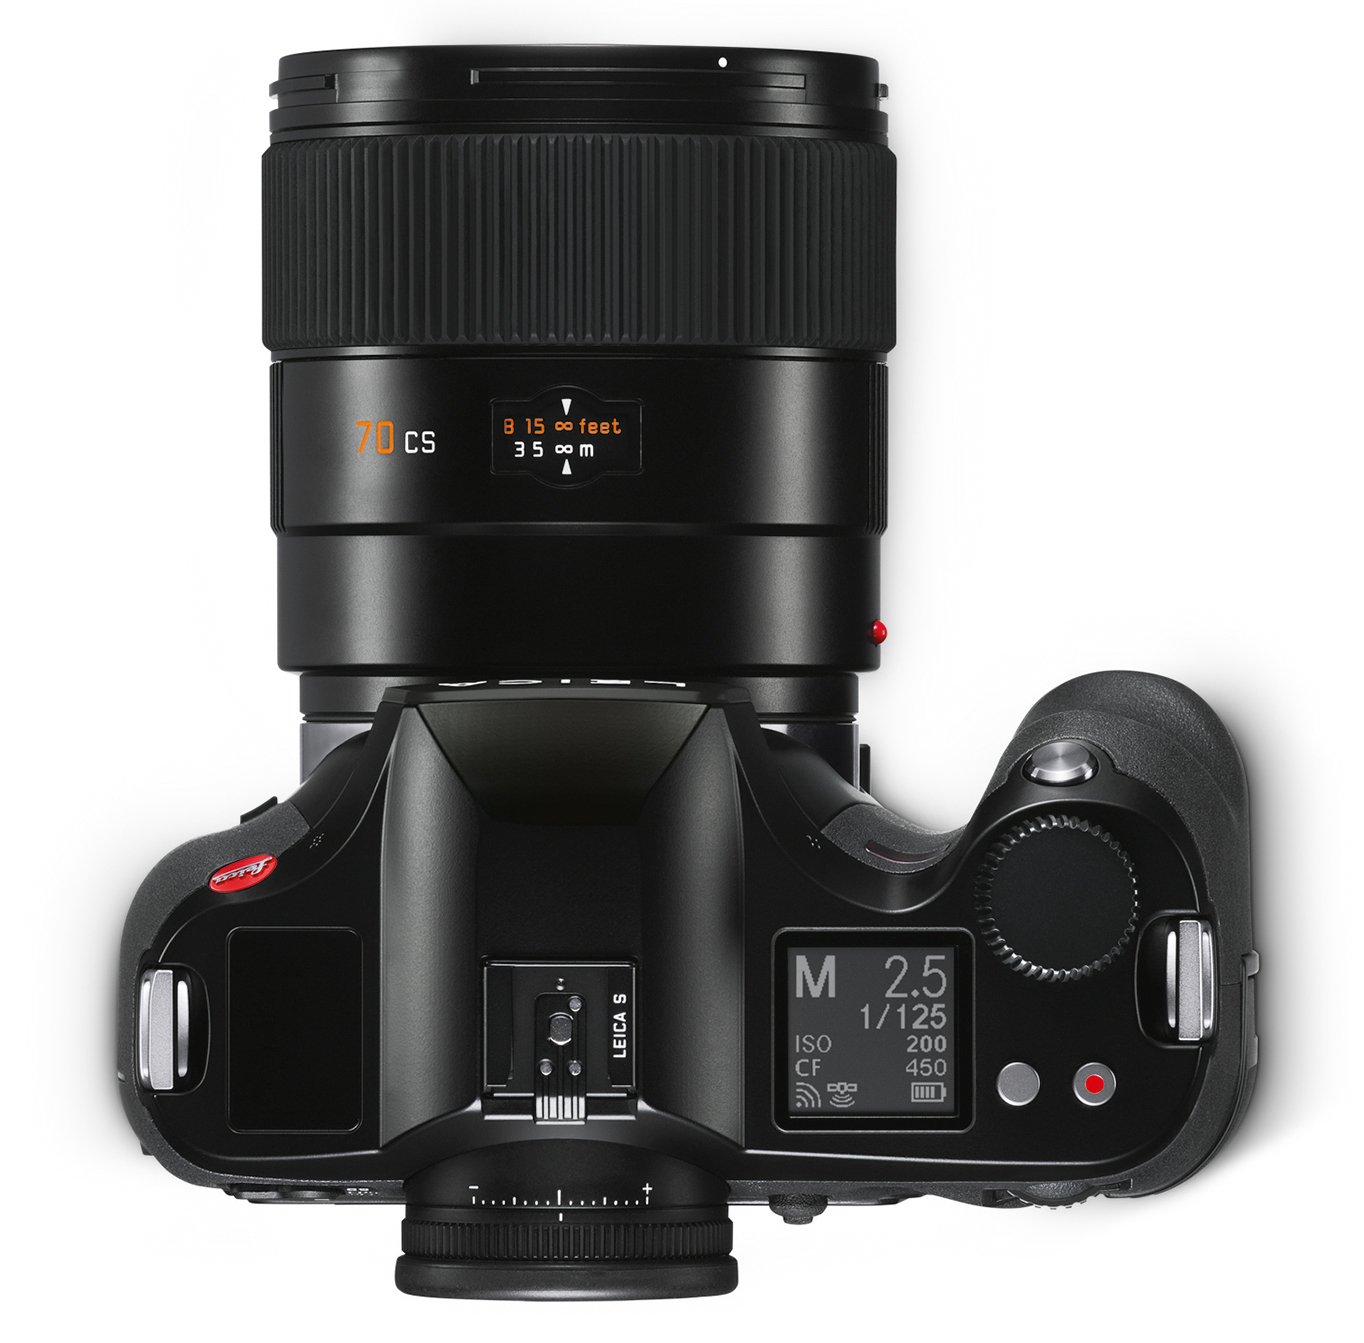 Leica ra mắt máy ảnh S3: Cảm biến Medium Format 64MP, quay video 4K - Ảnh 6.